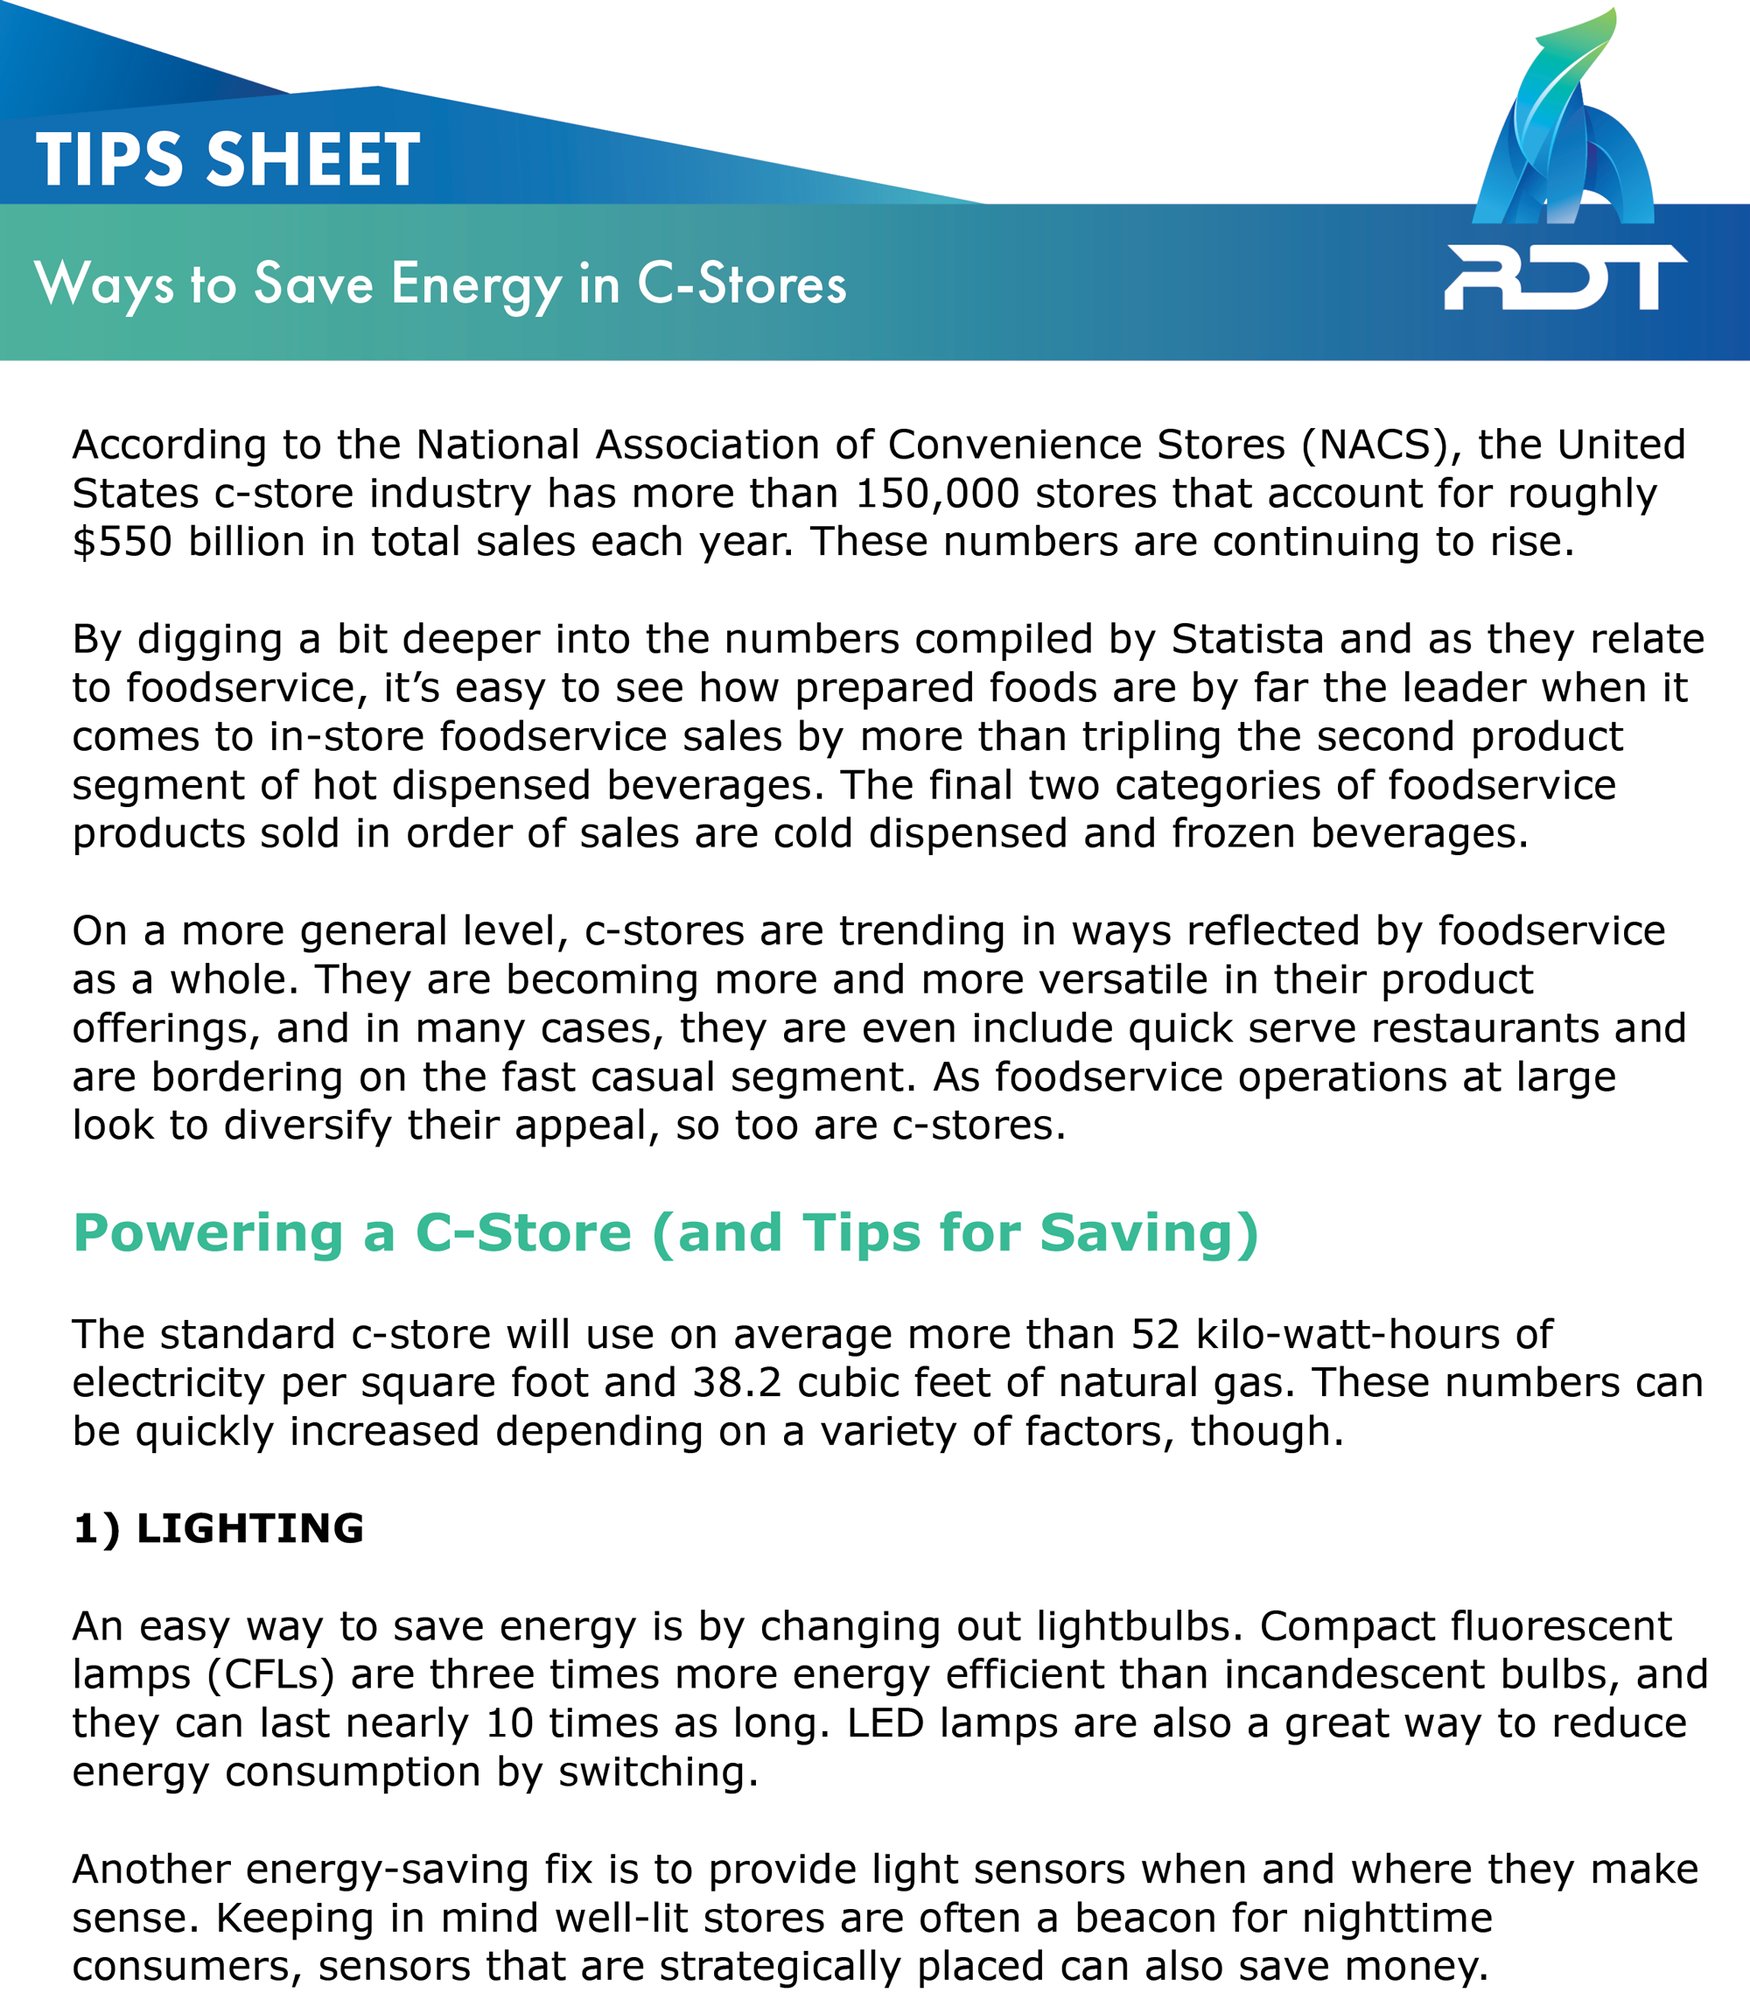 C-Store-Energy-Savings-Tips-Sheet---RDT